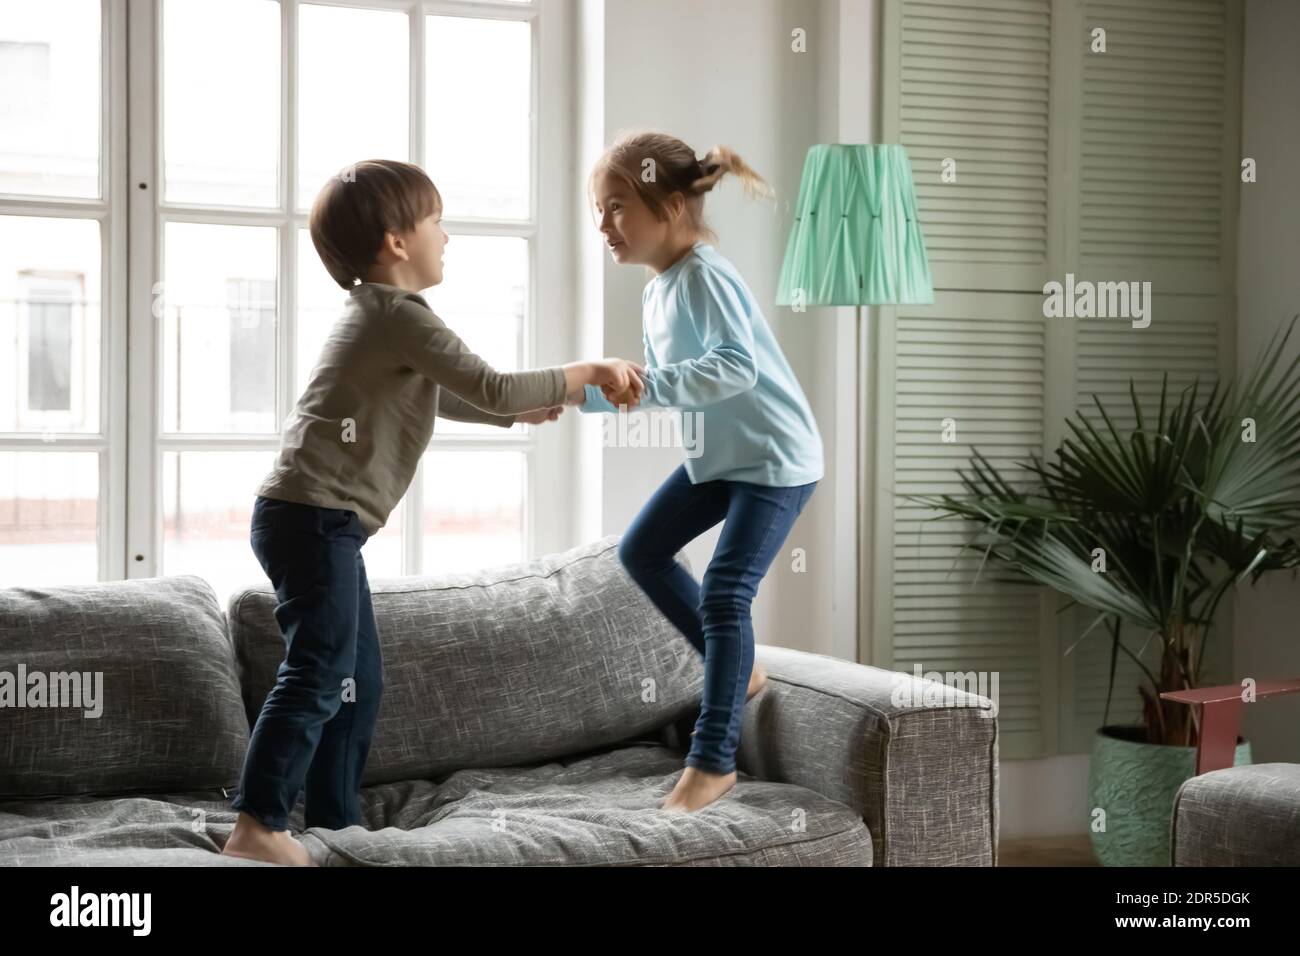 Un petit garçon et une fille surjoyés se tenant les mains, sautant sur un canapé Banque D'Images